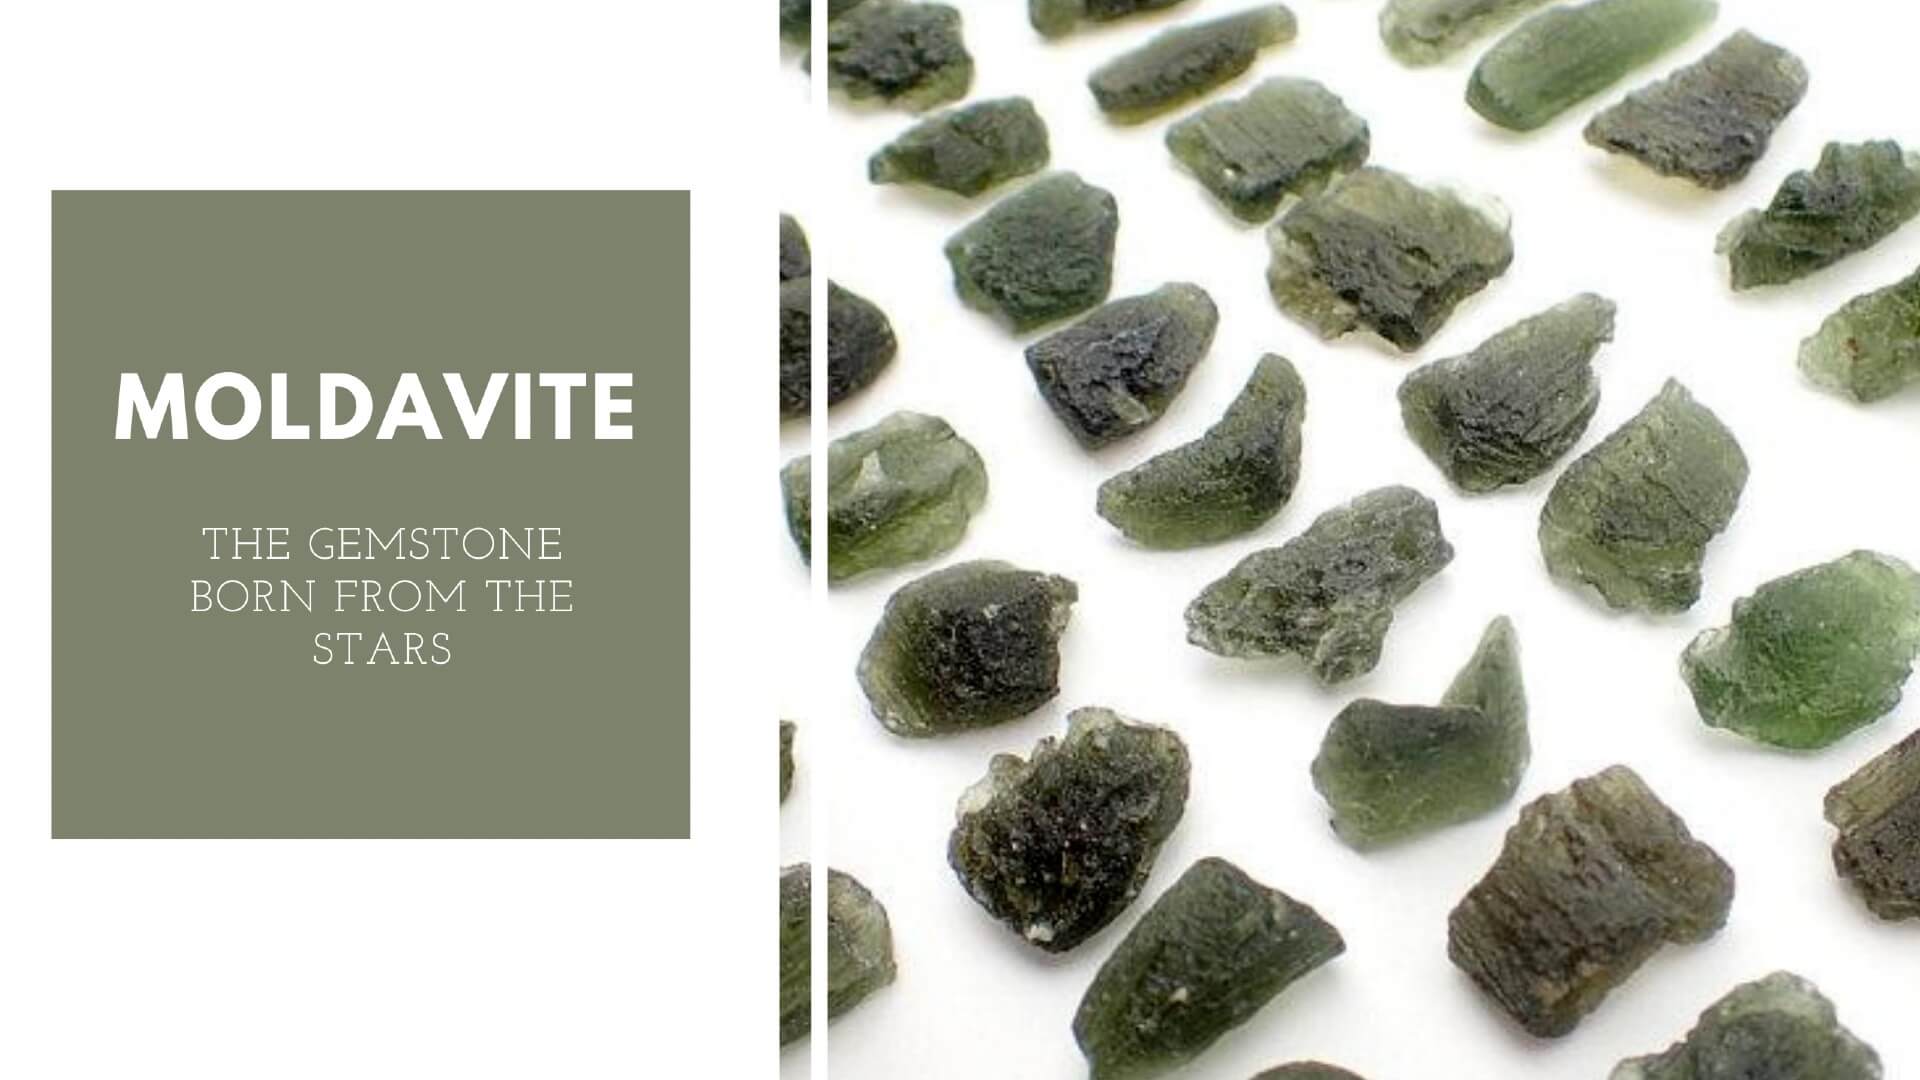 Auténticas propiedades curativas de piedras preciosas de meteorito moldavita | Moldavita Significado | Beneficios de la moldavita - Cristales Mágicos